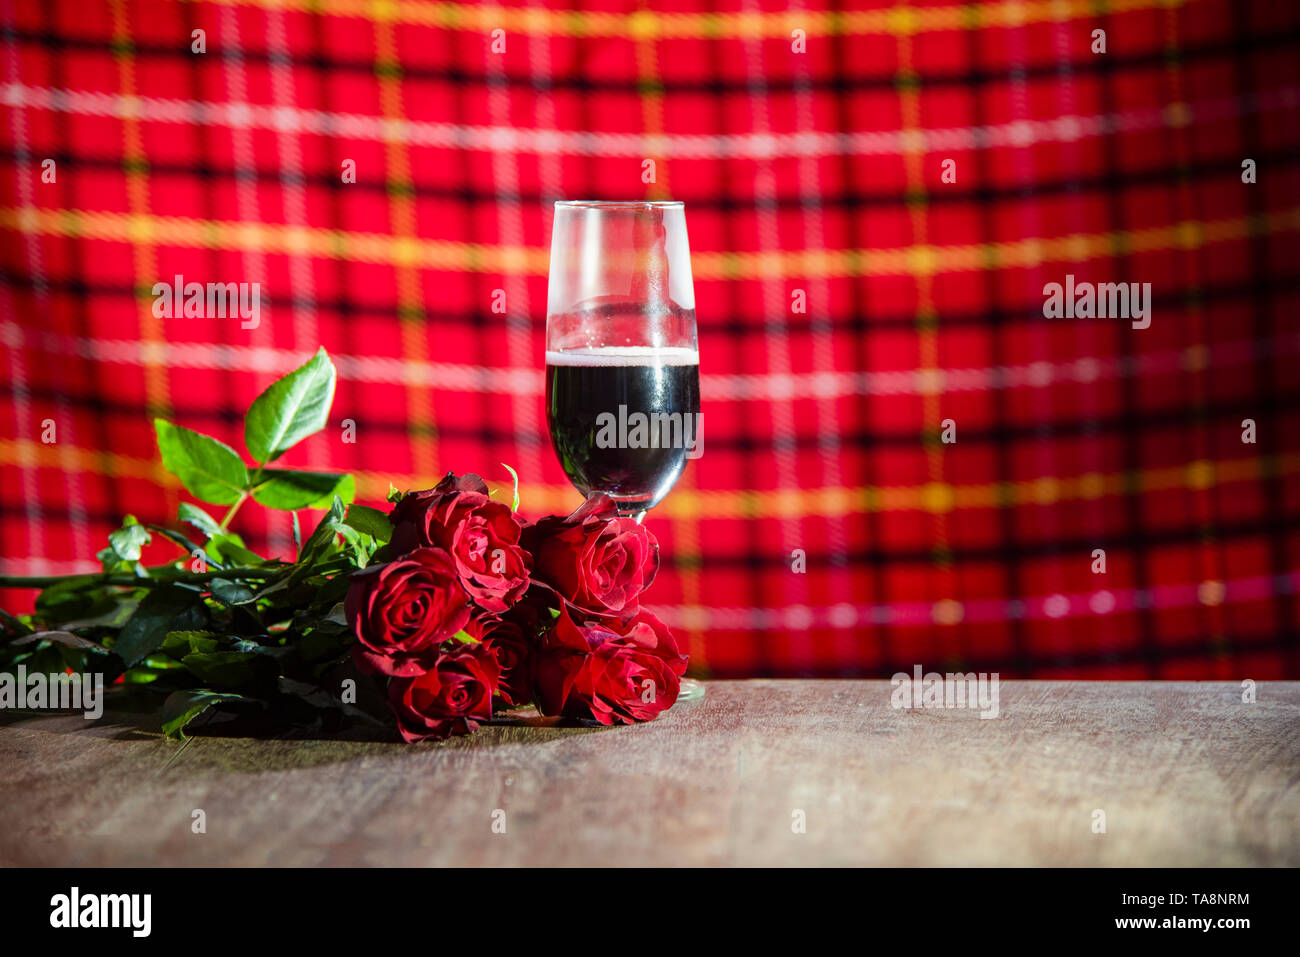 Glas Rotwein auf bar Valentines Abendessen romantische Liebe Konzept/ romantisch gedeckten Tisch mit Champagner Glas Wein Rosen Blume auf  rustikalen t eingerichtet Stockfotografie - Alamy